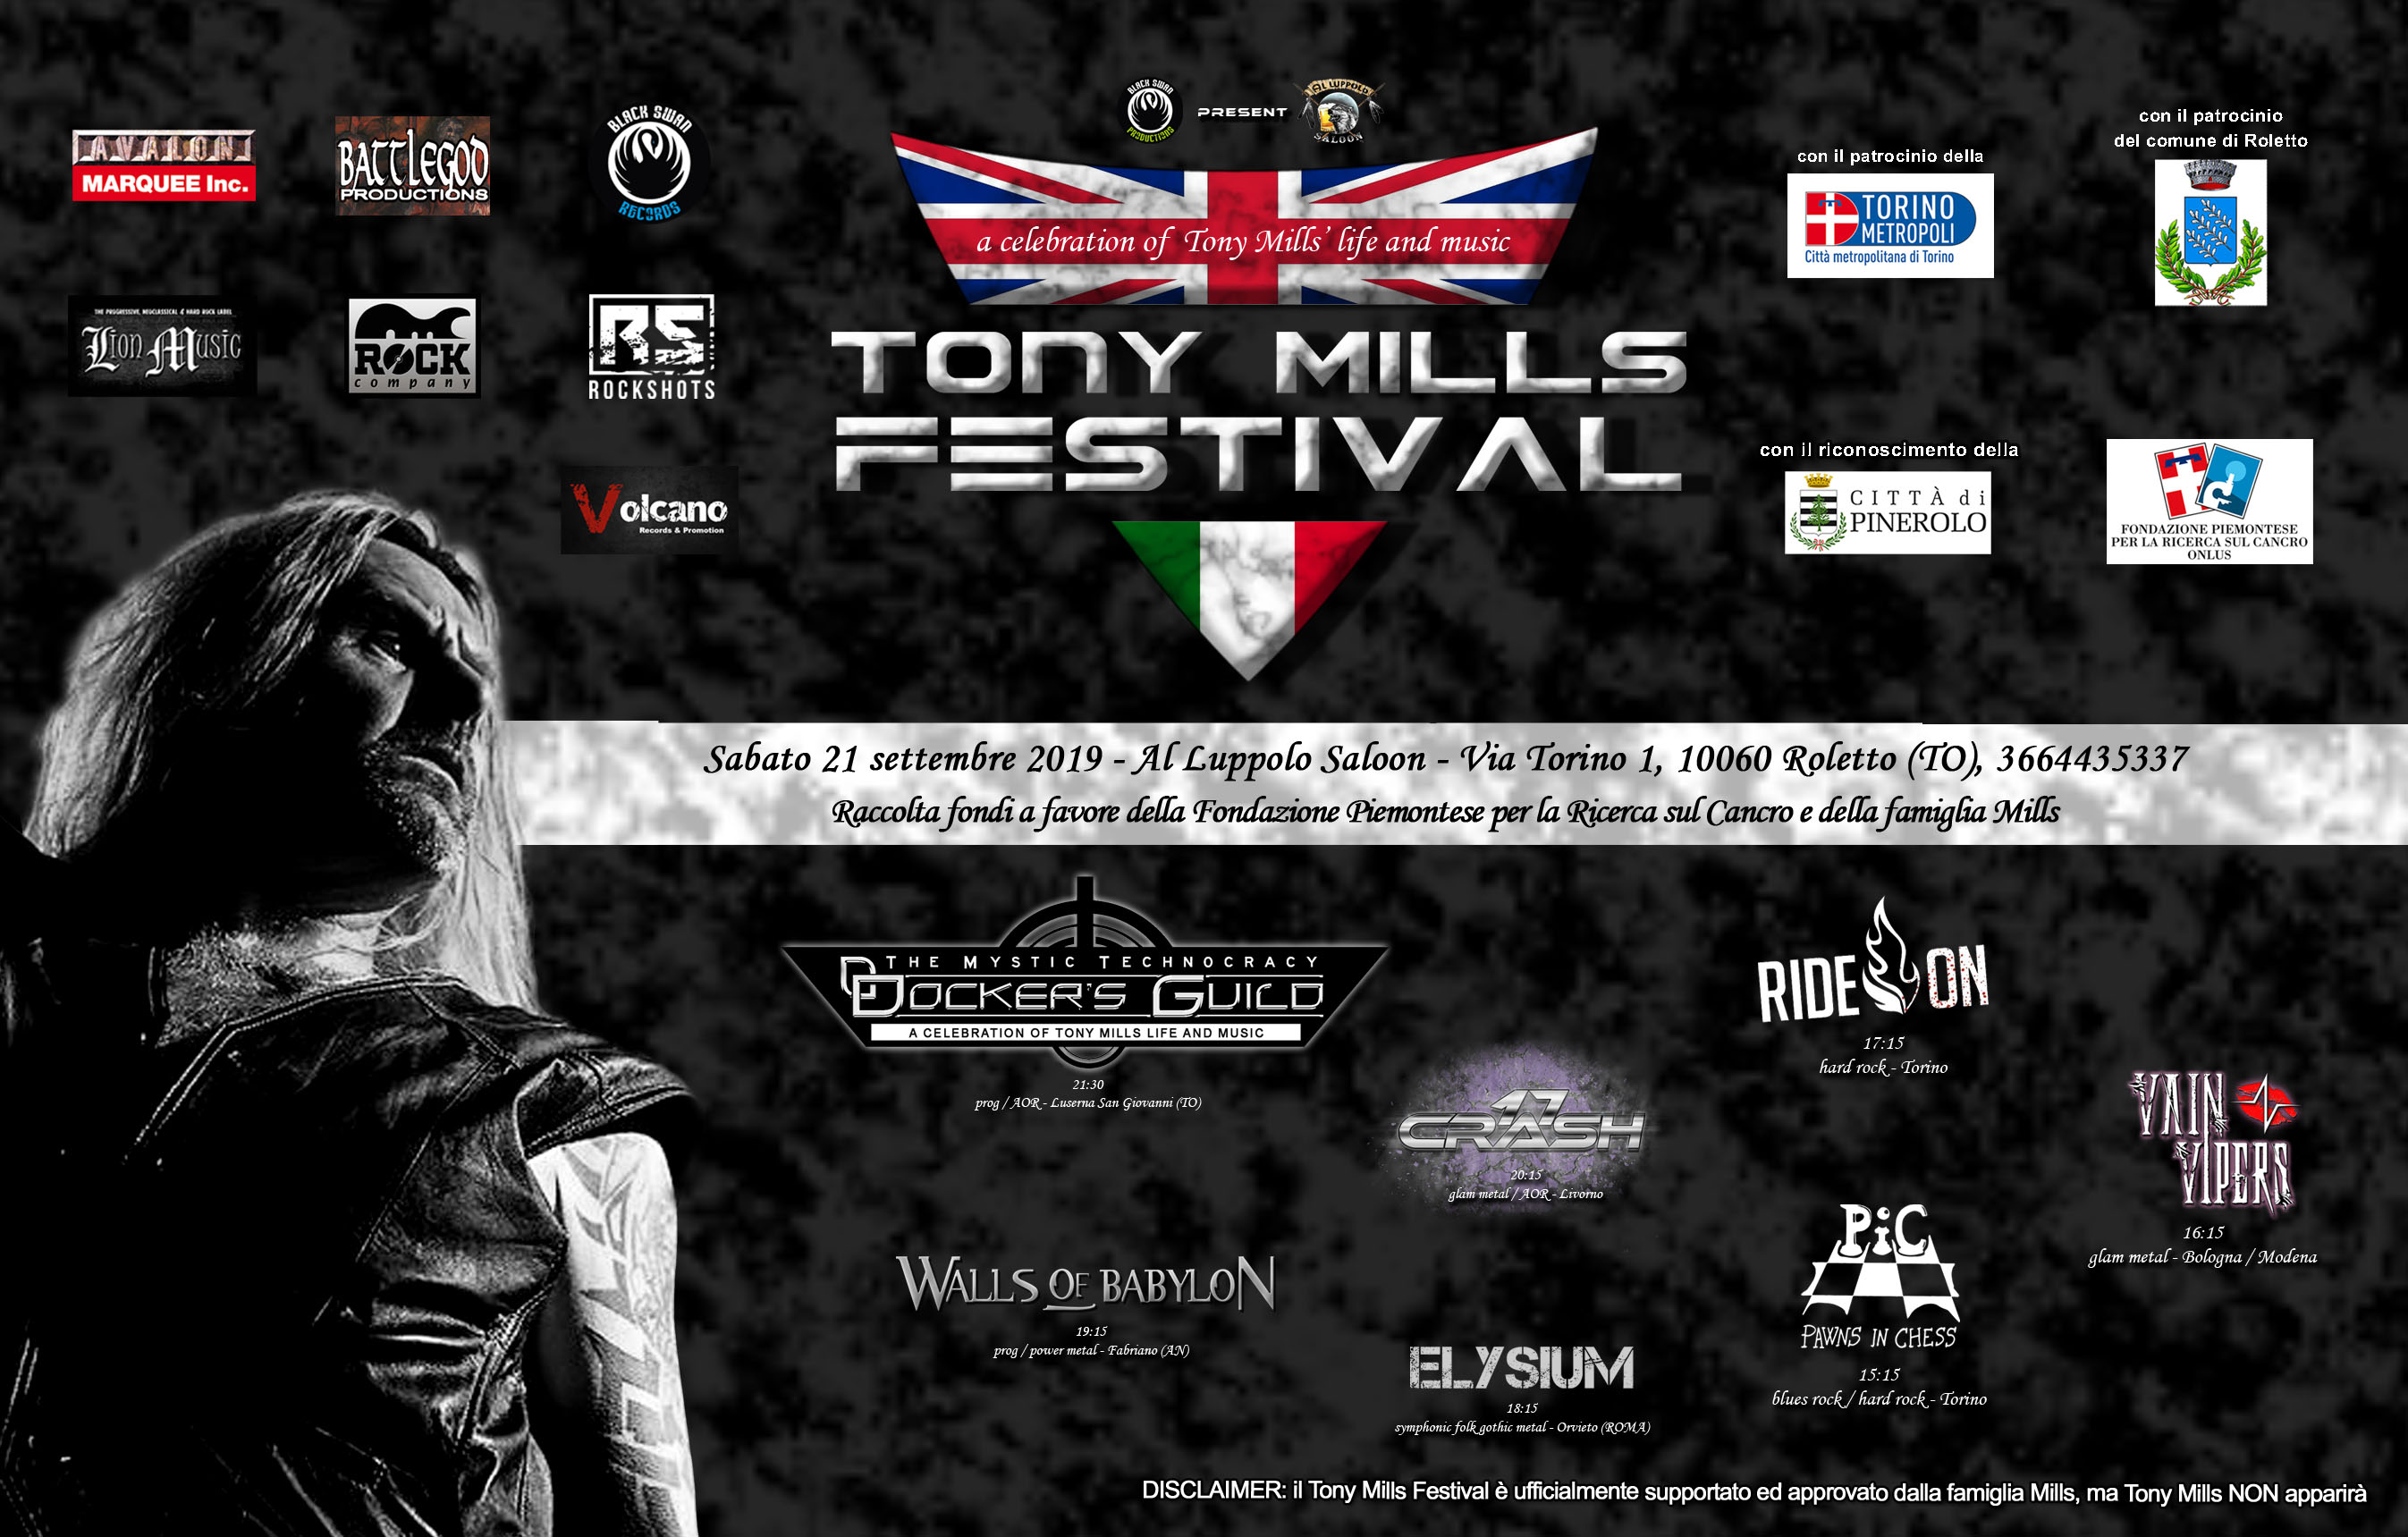 Tony Mills Festival- sabato 21 settembre 2019 presso il Luppolo Saloon a Roletto (TO)